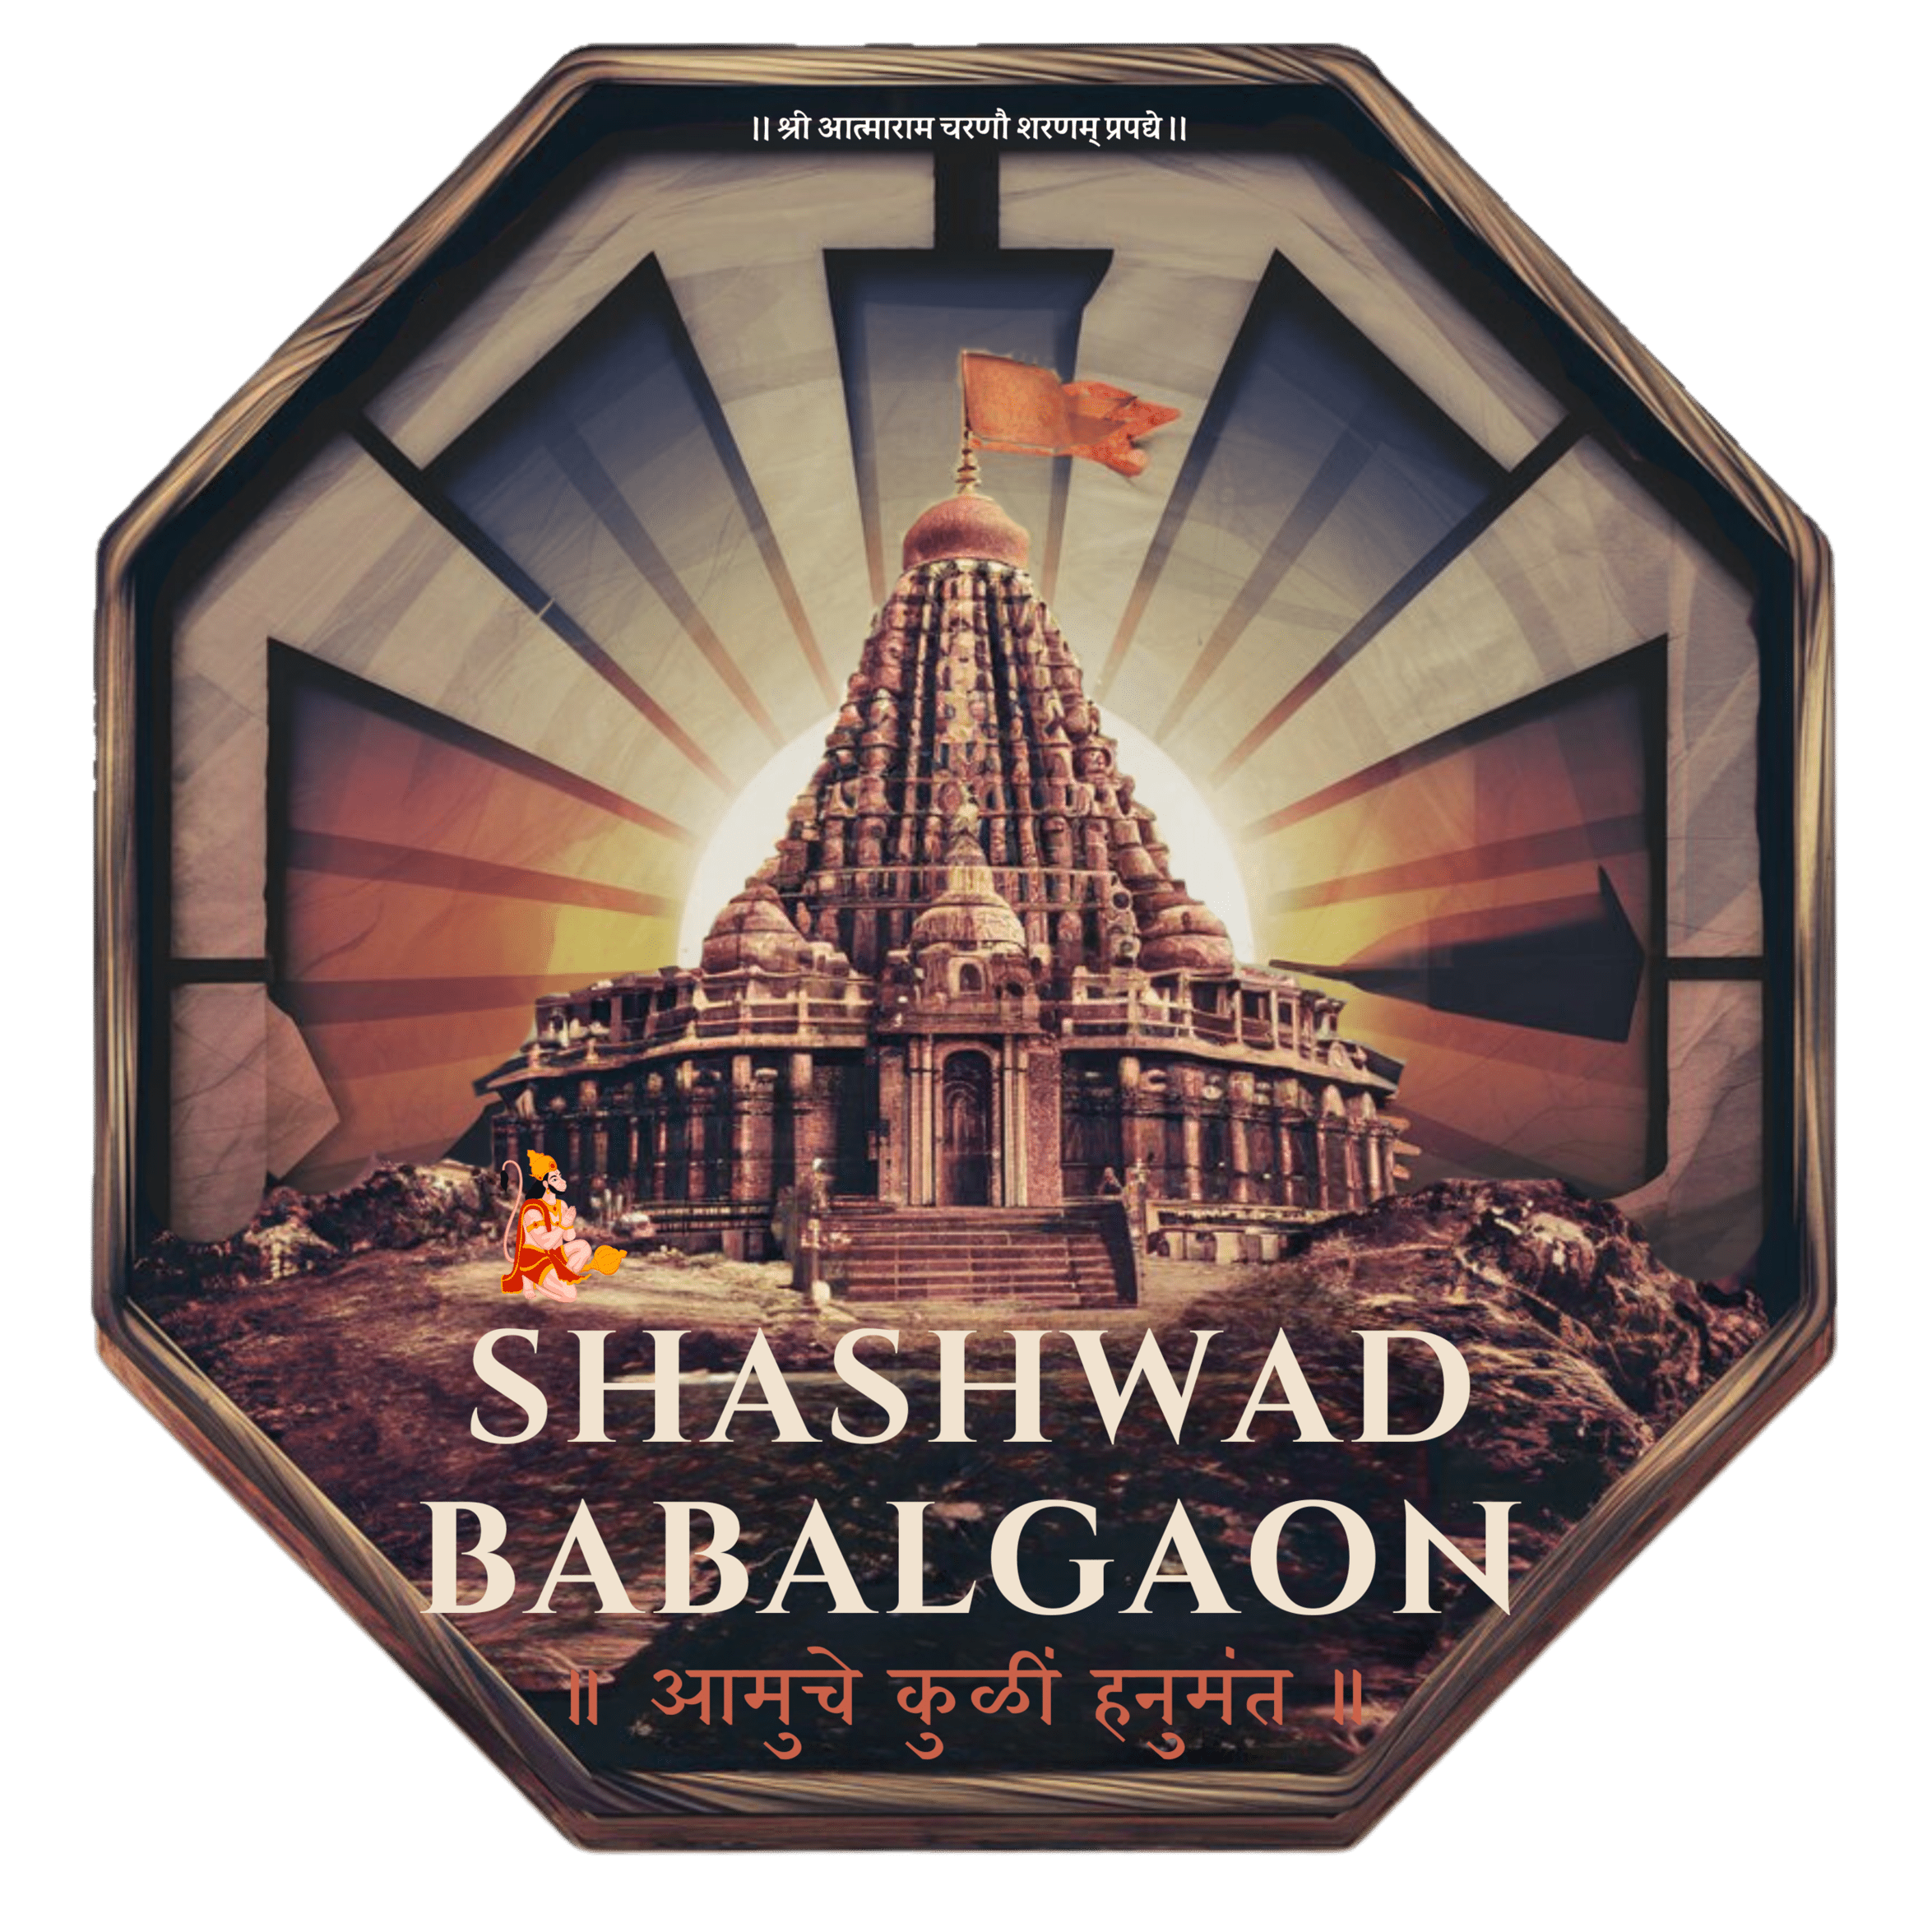 Shashwad Babalgaon offcl logo.png